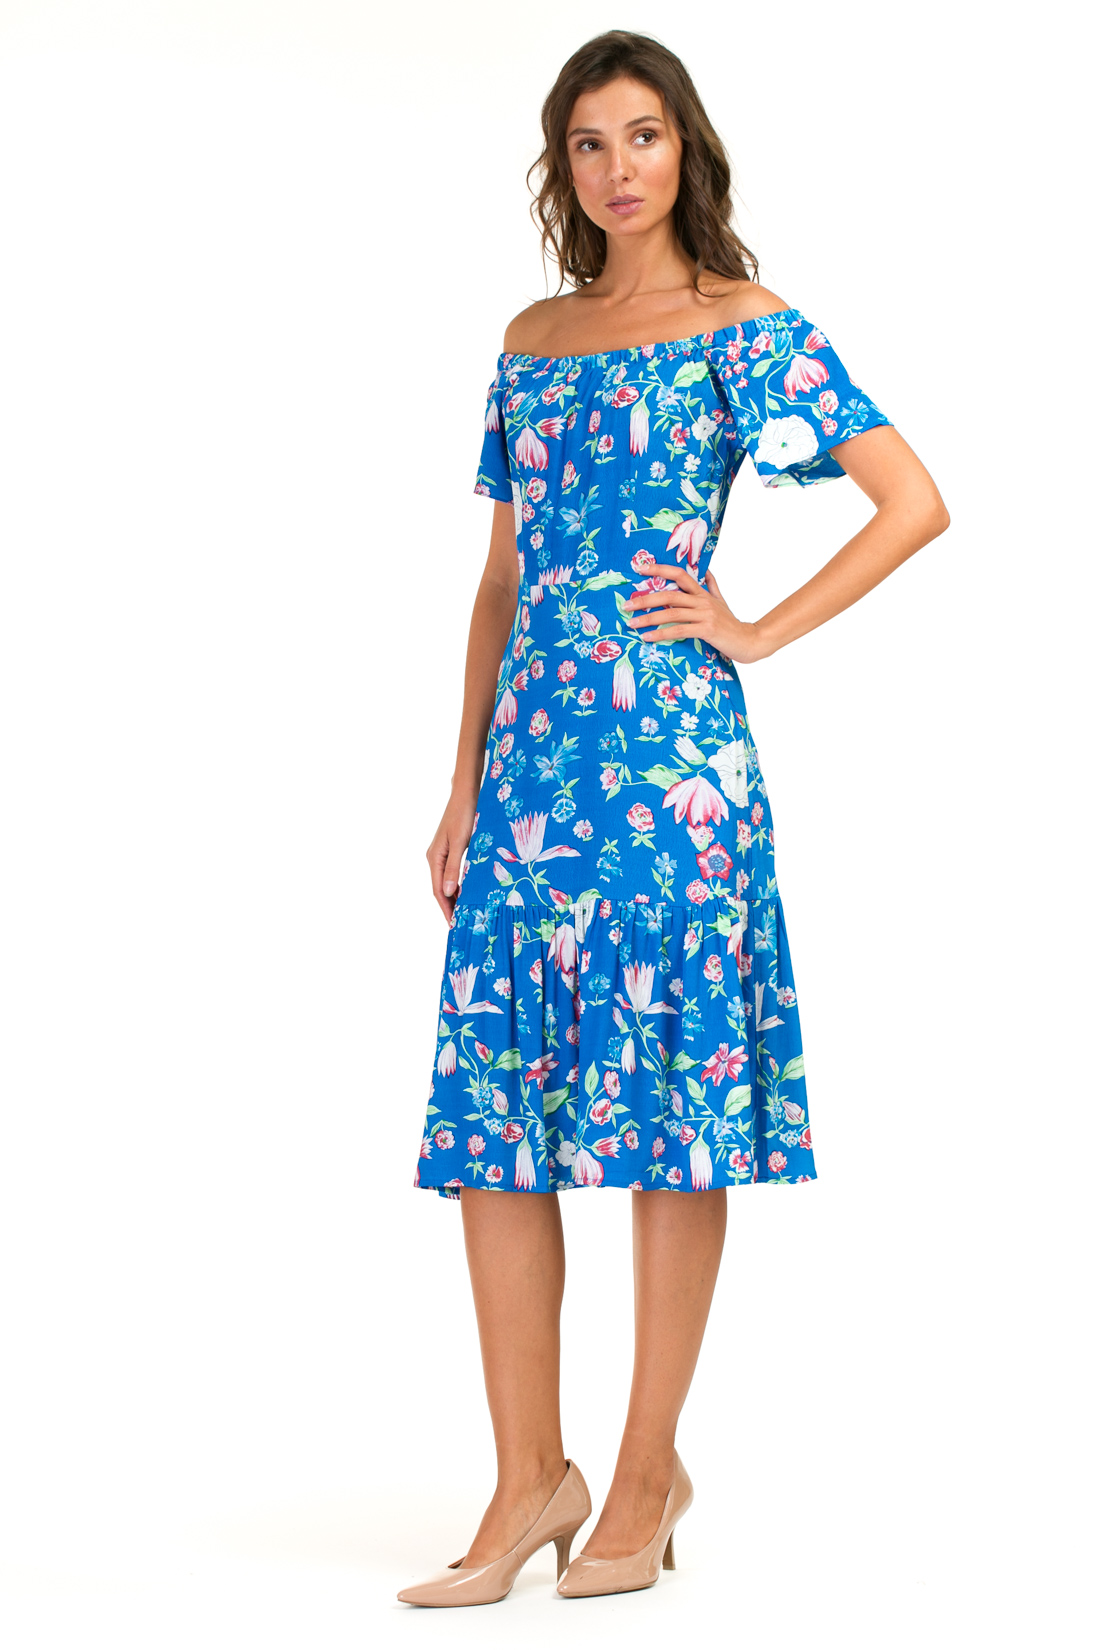 Платье с оборкой и открытыми плечами (арт. baon B457055), размер XS, цвет синий Платье с оборкой и открытыми плечами (арт. baon B457055) - фото 5